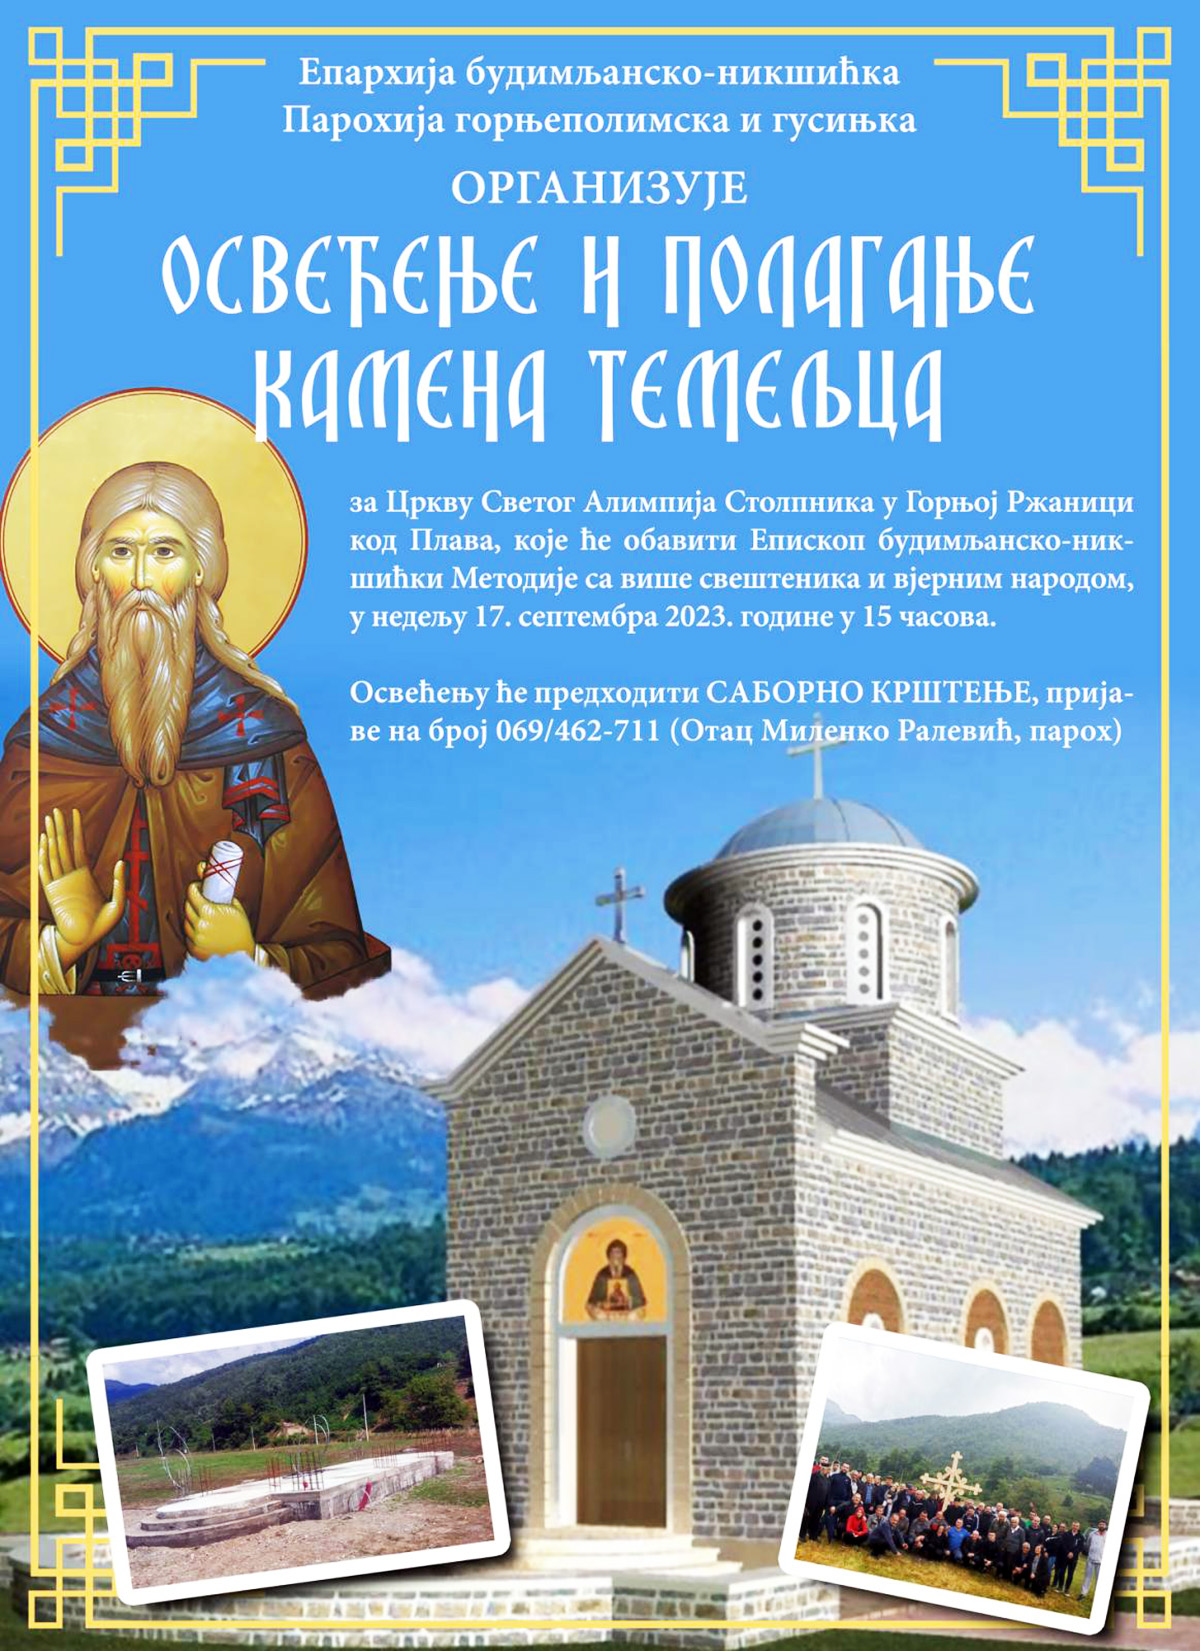 Најава: Освећење и полагање камена темељца за цркву Светог Алимпија Столпника у Горњој Ржаници